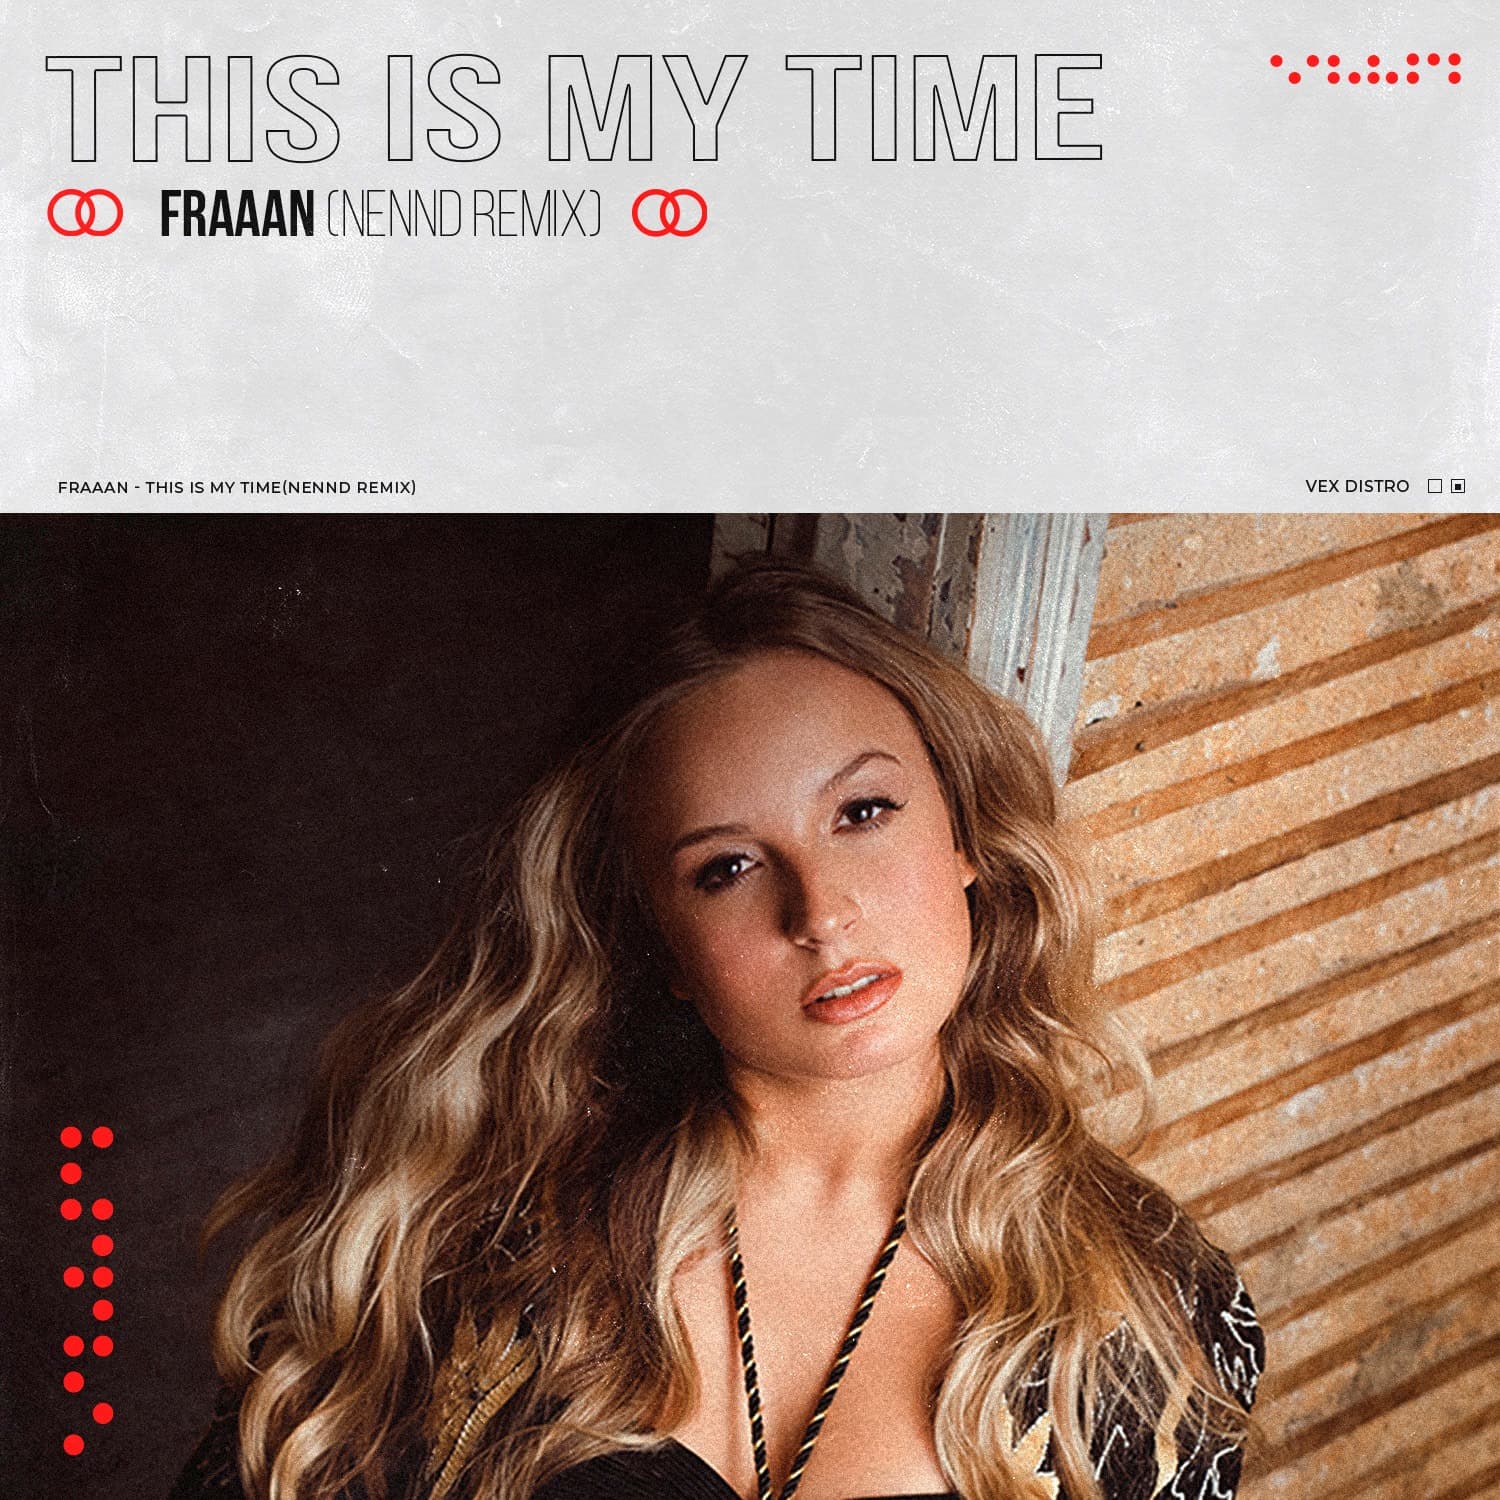 NENND apresenta remix de "This Is My Time", original de FRAAAN